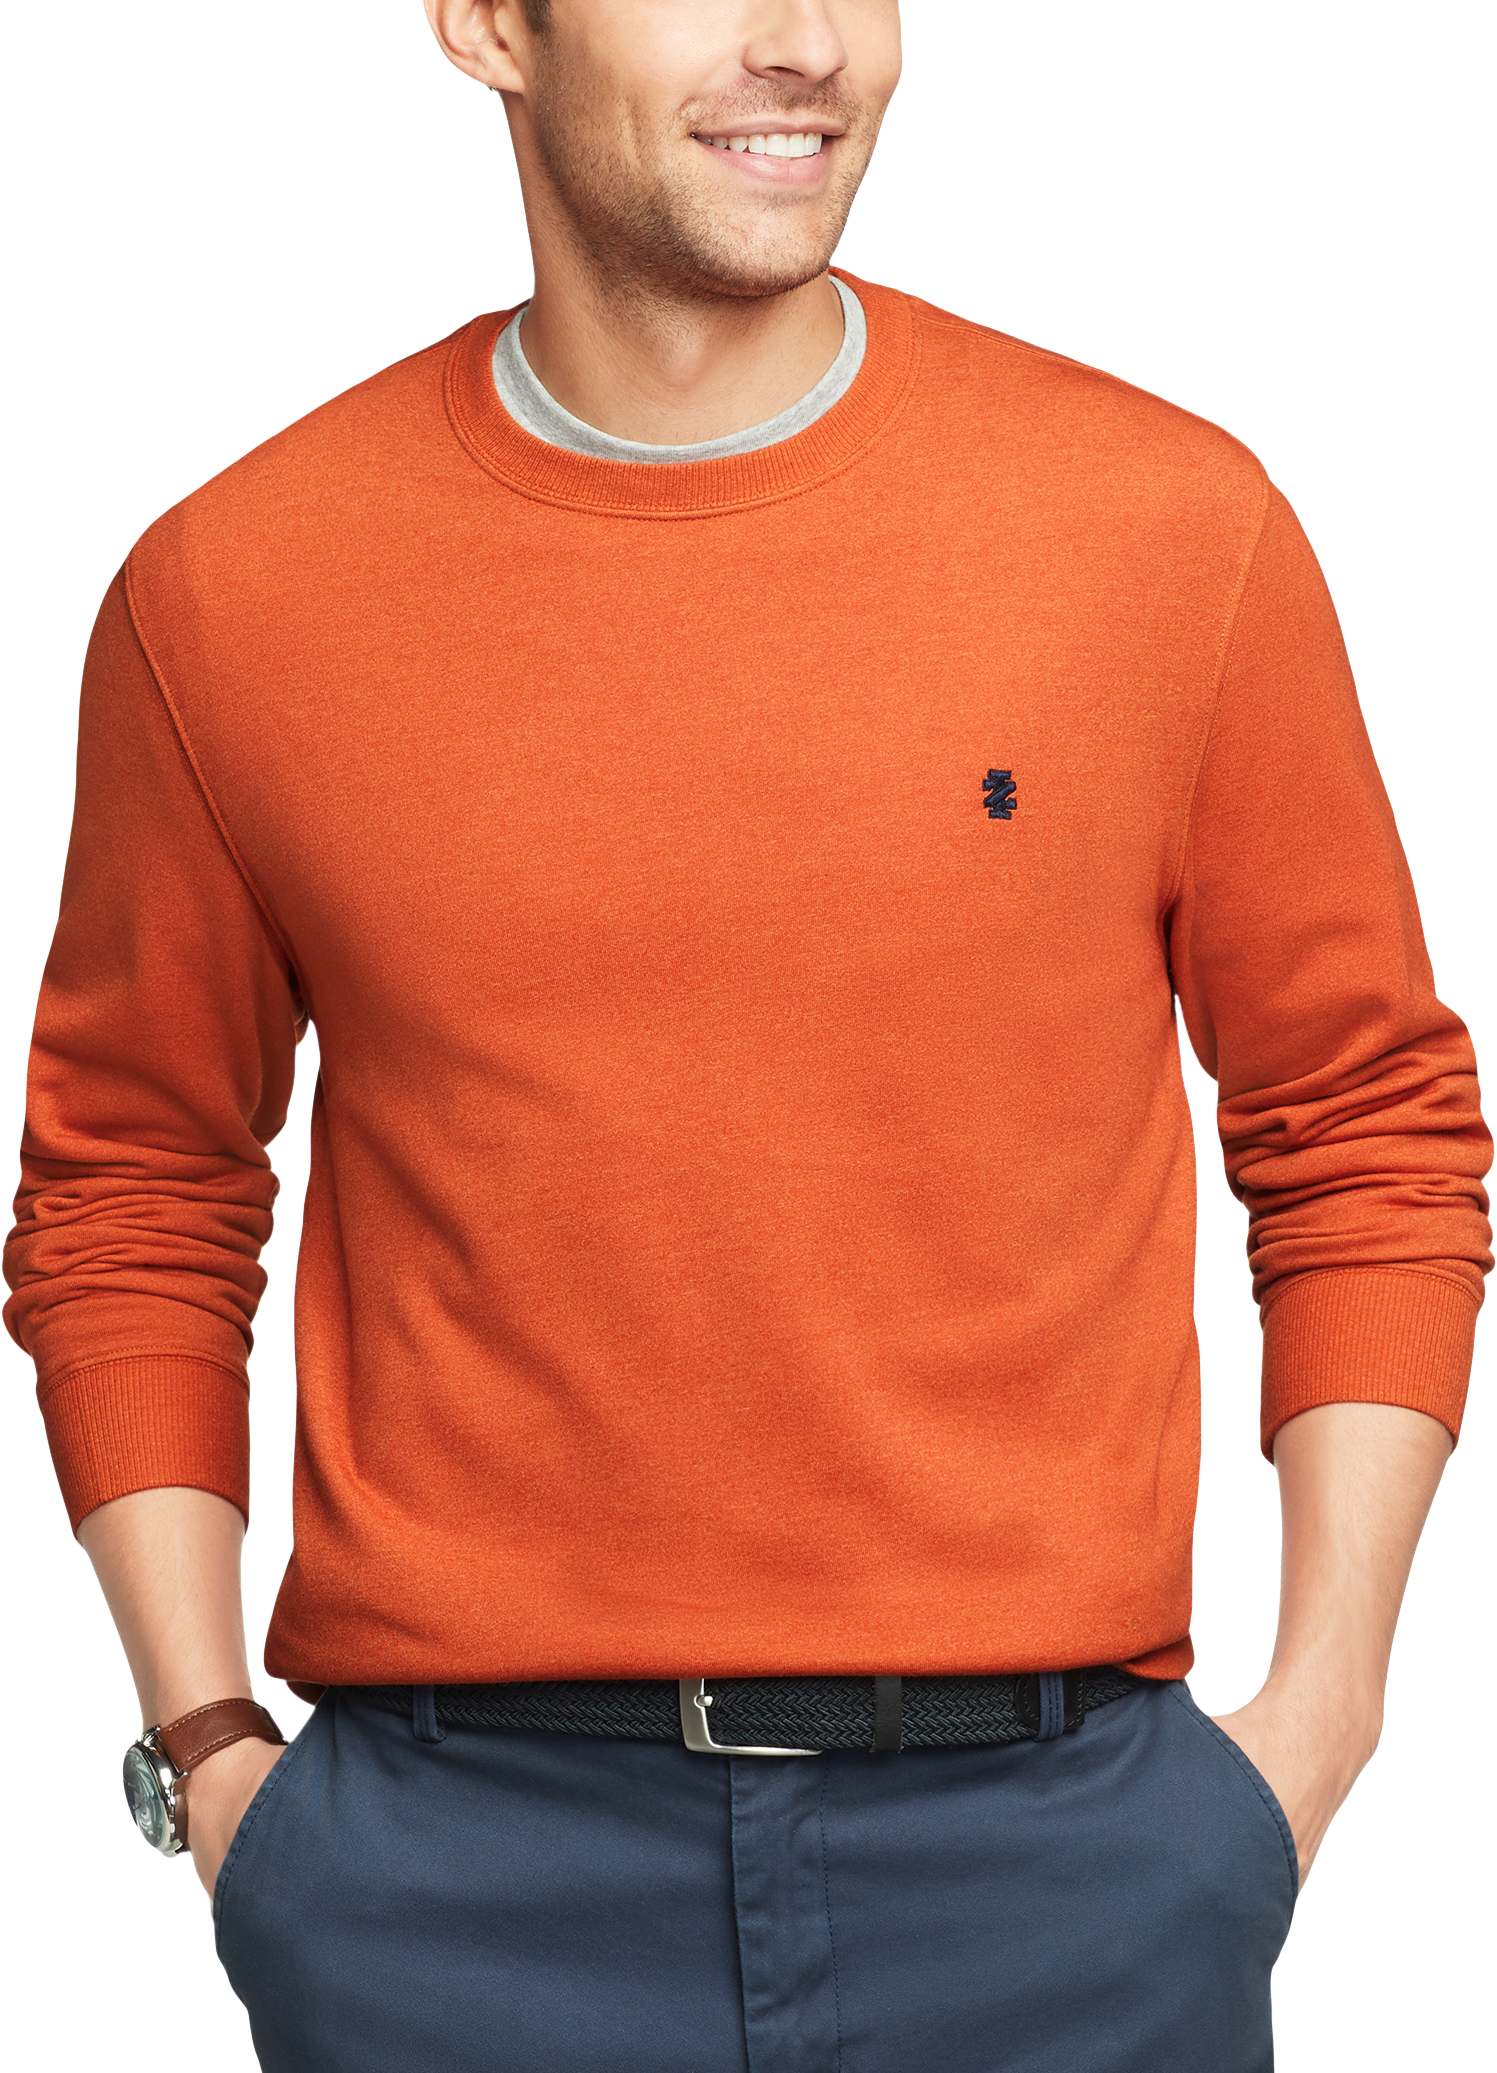 Men’s IZOD Sweaters & Hoodies $9.99